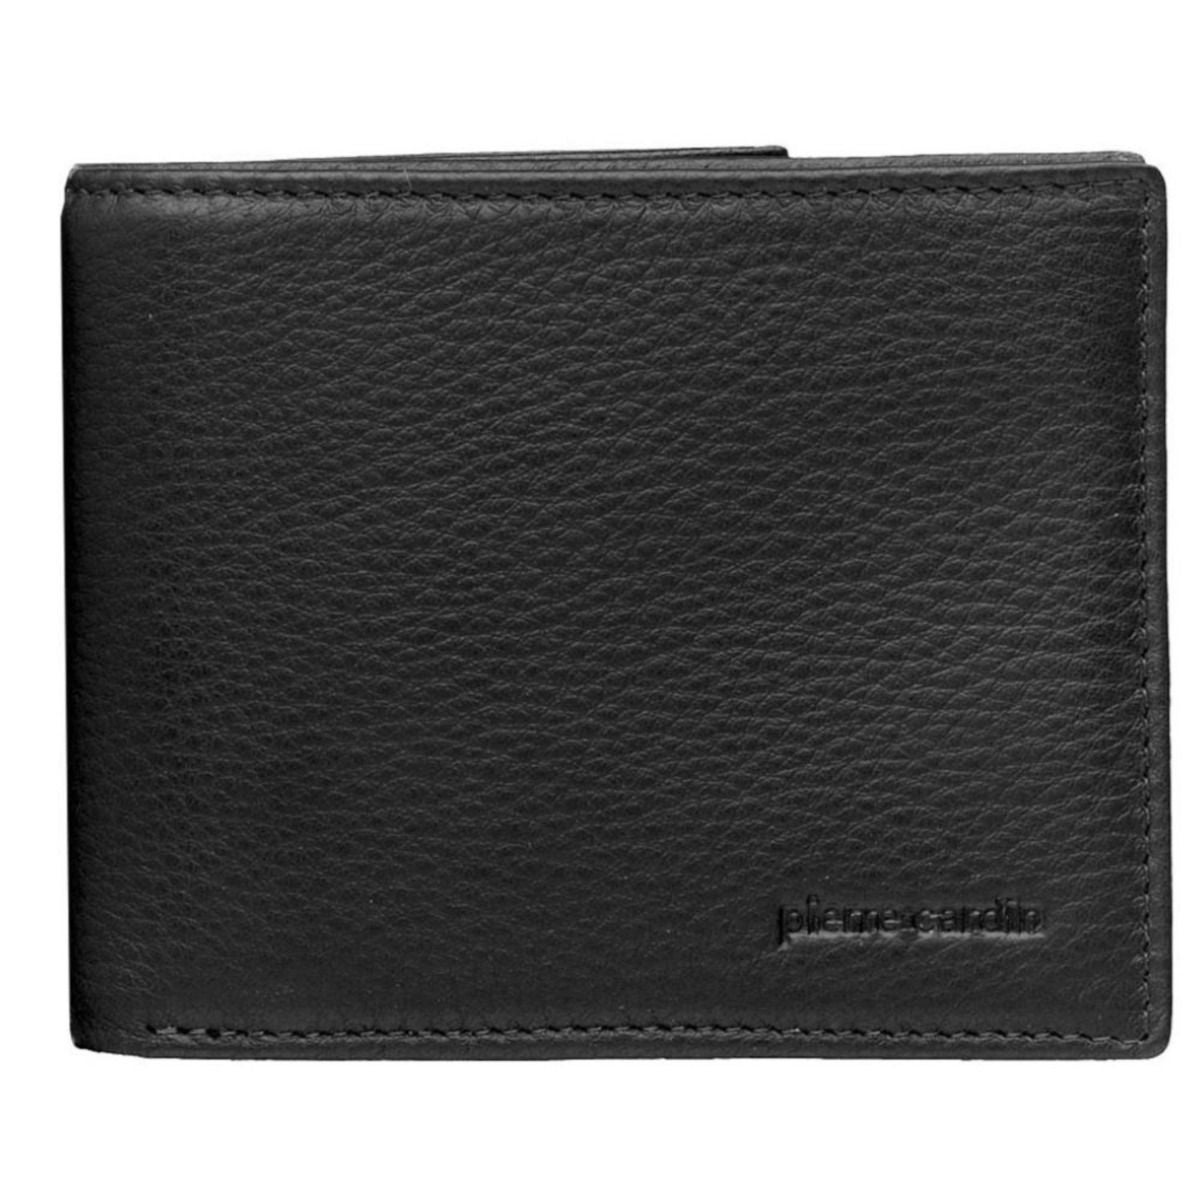 Pierre Cardin Mens Italian Leather Wallet 12 x 9.5cm